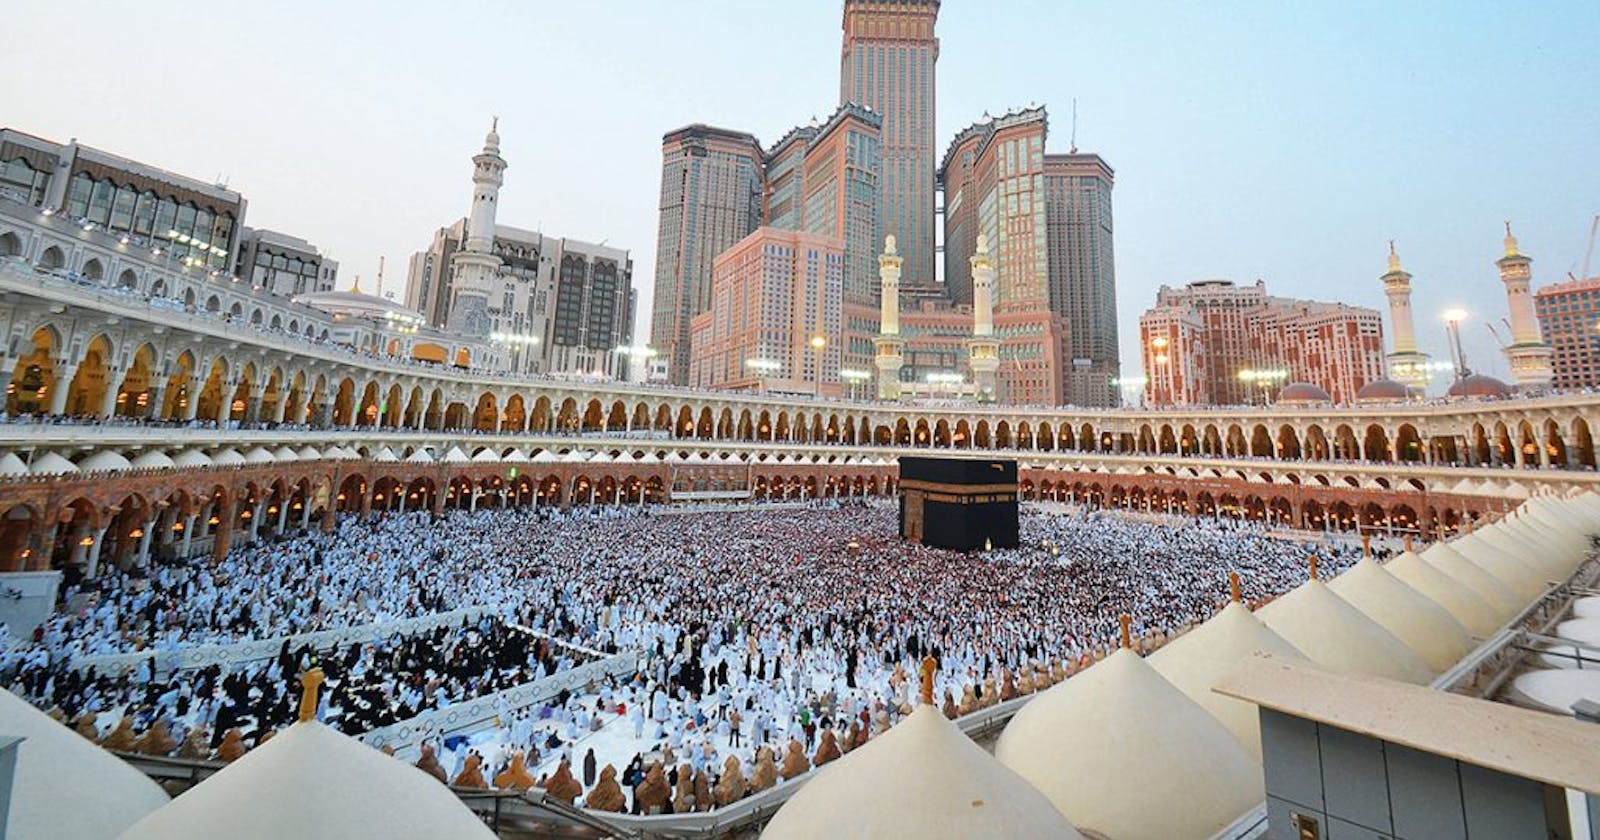 Top Things to Do in Makkah During Umrah